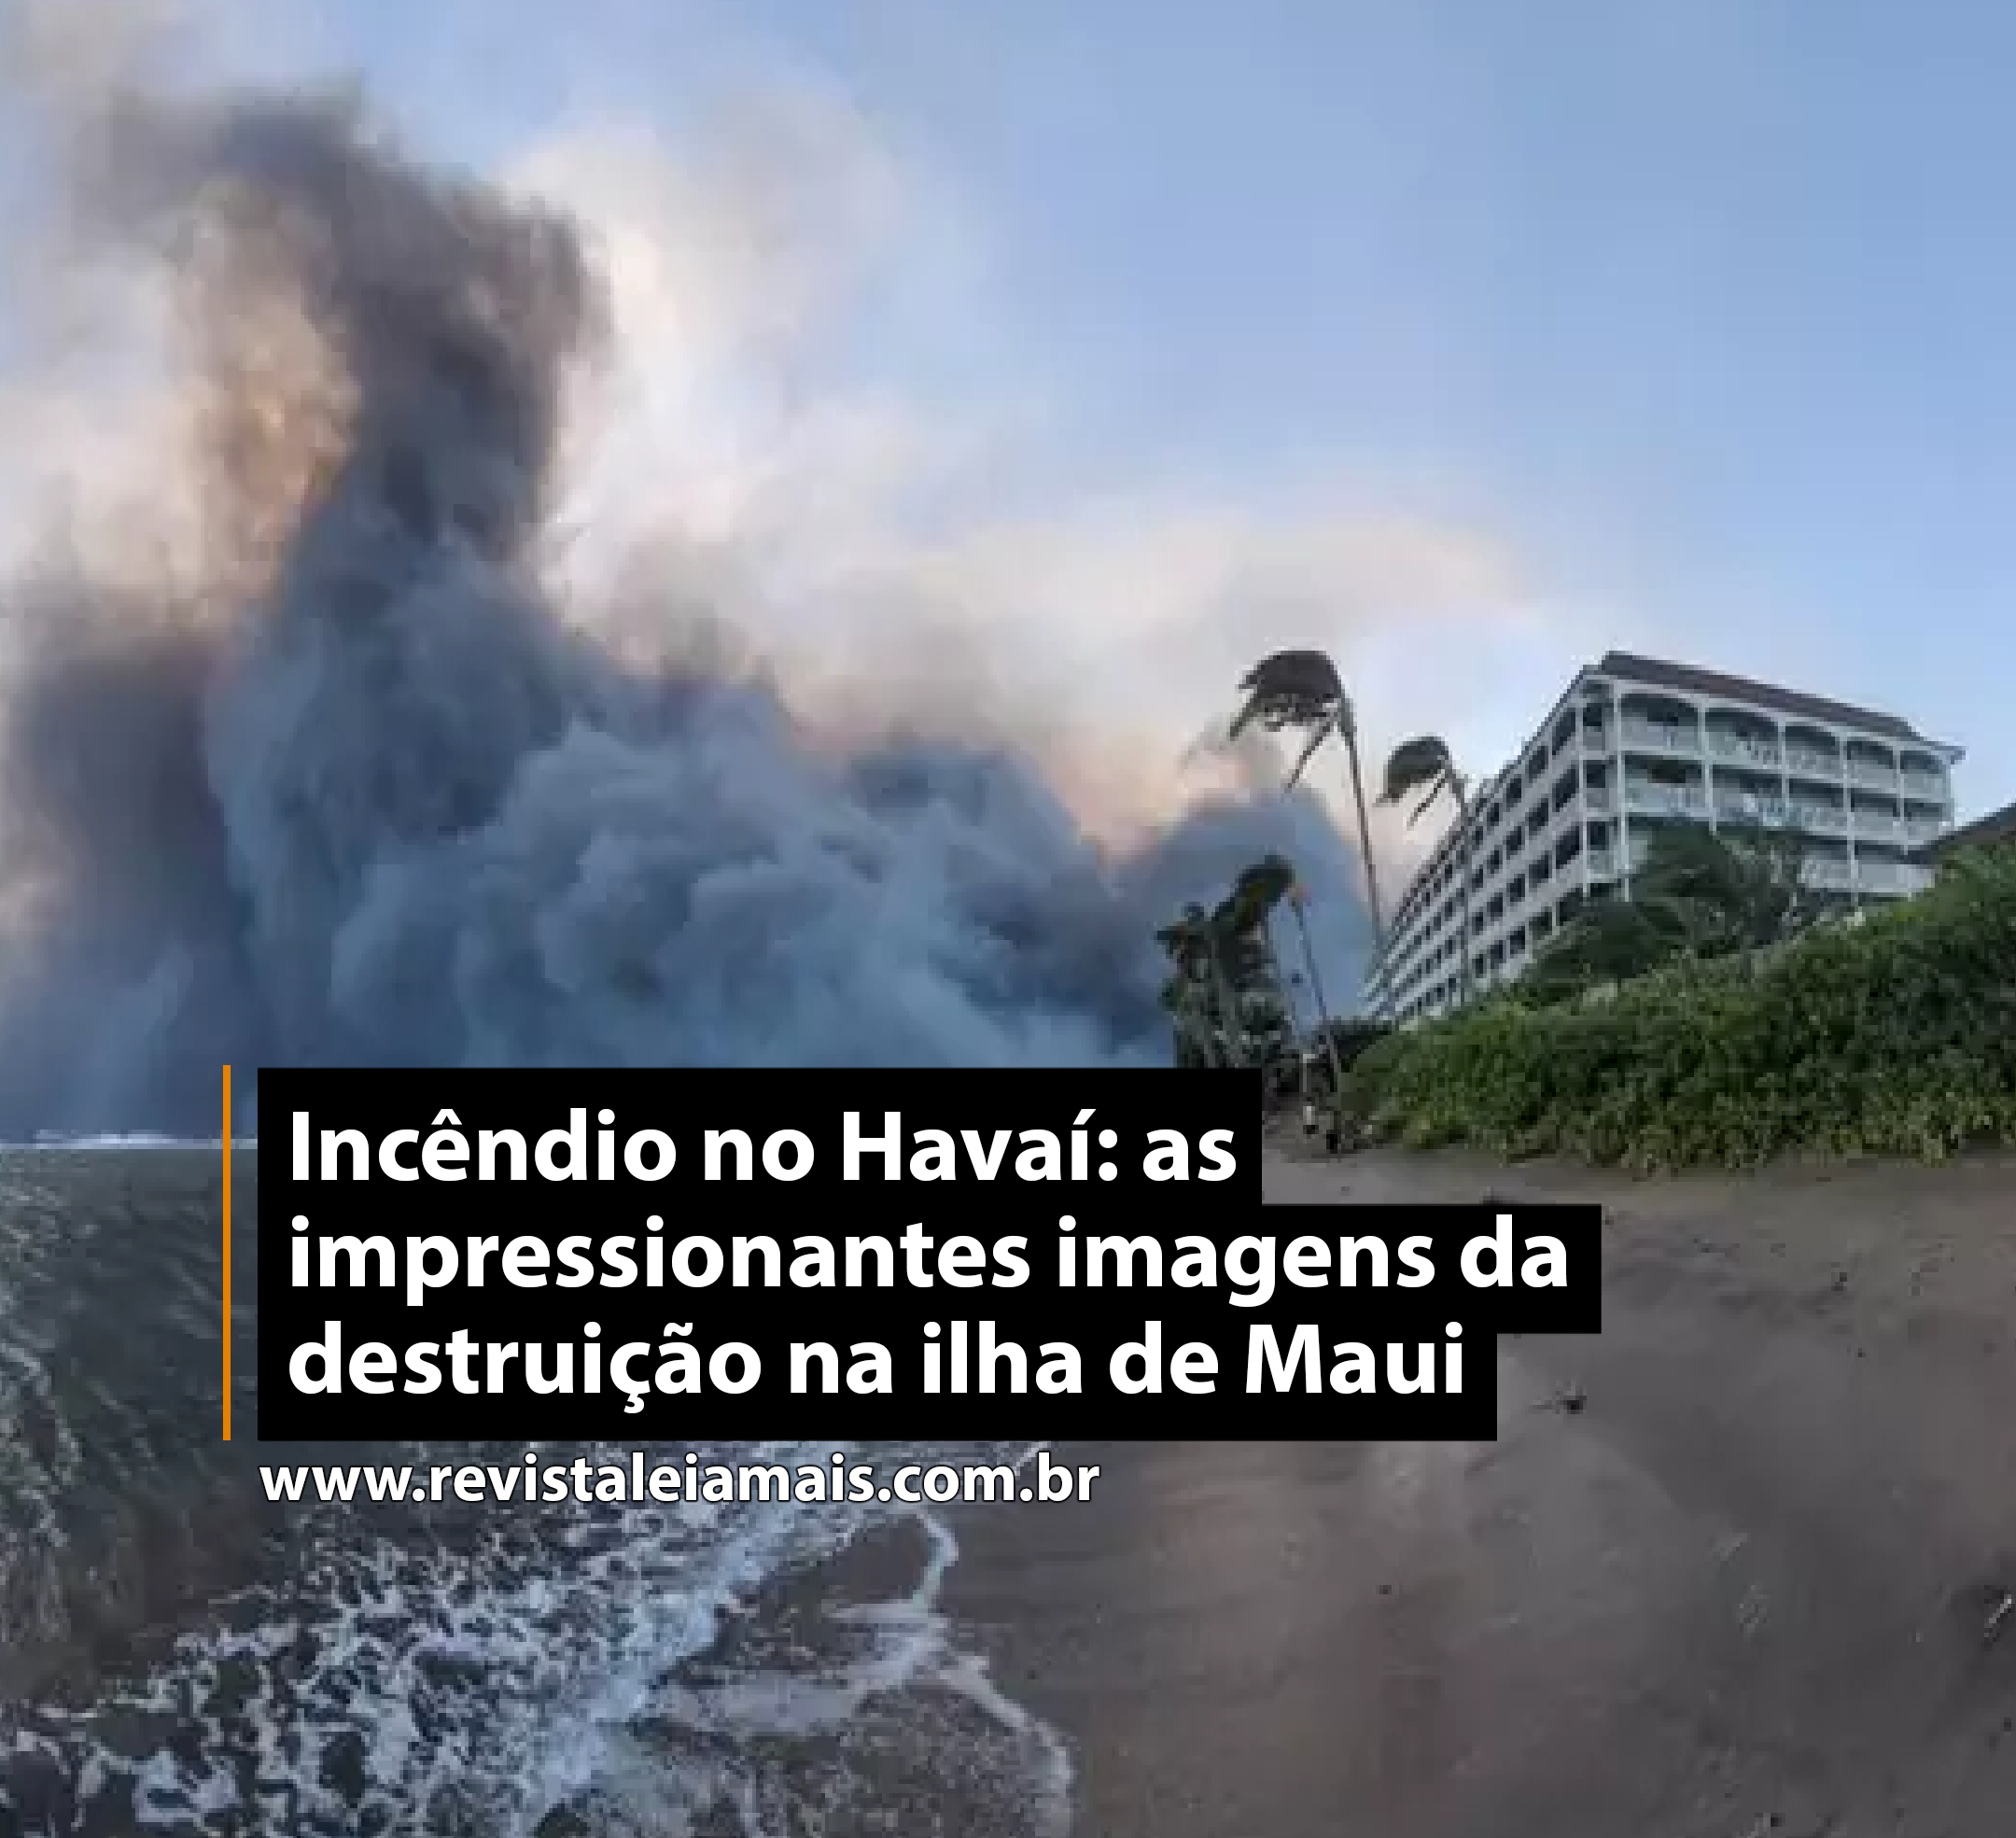 Incêndio no Havaí: as impressionantes imagens da destruição na ilha de Maui